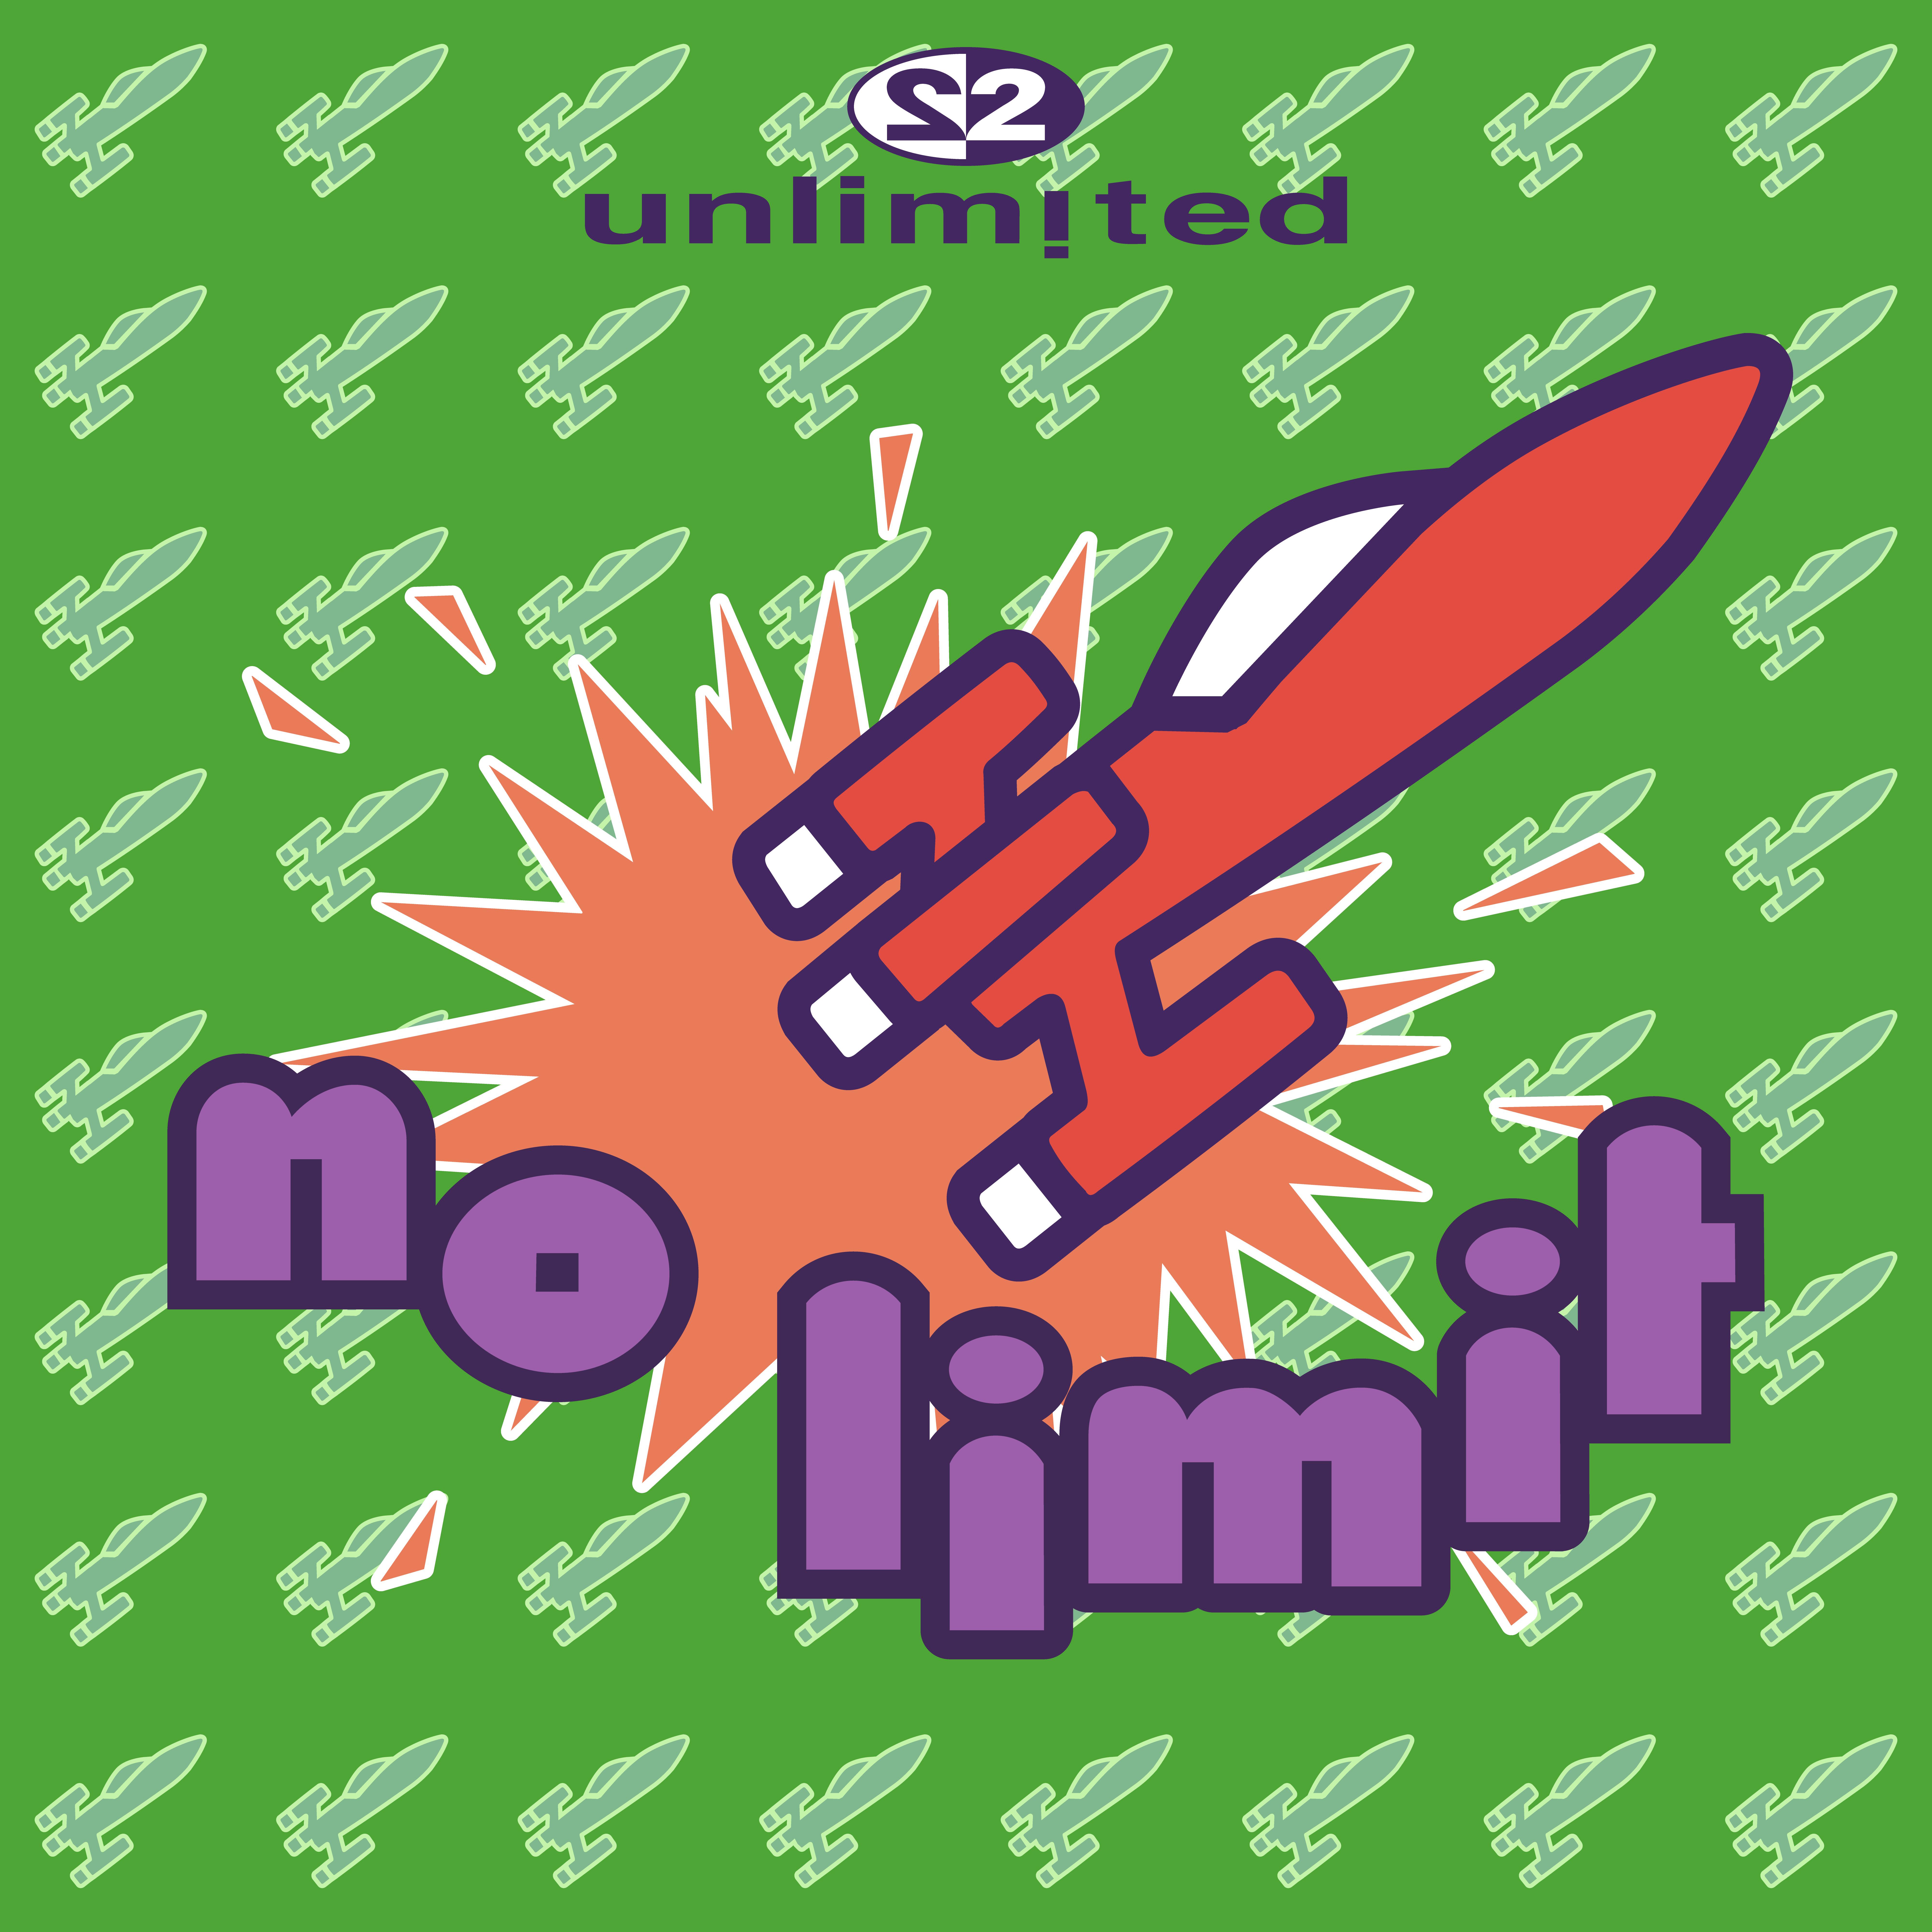 2 Unlimited - No Limit (DJ Digress Hamburg Style Remix)